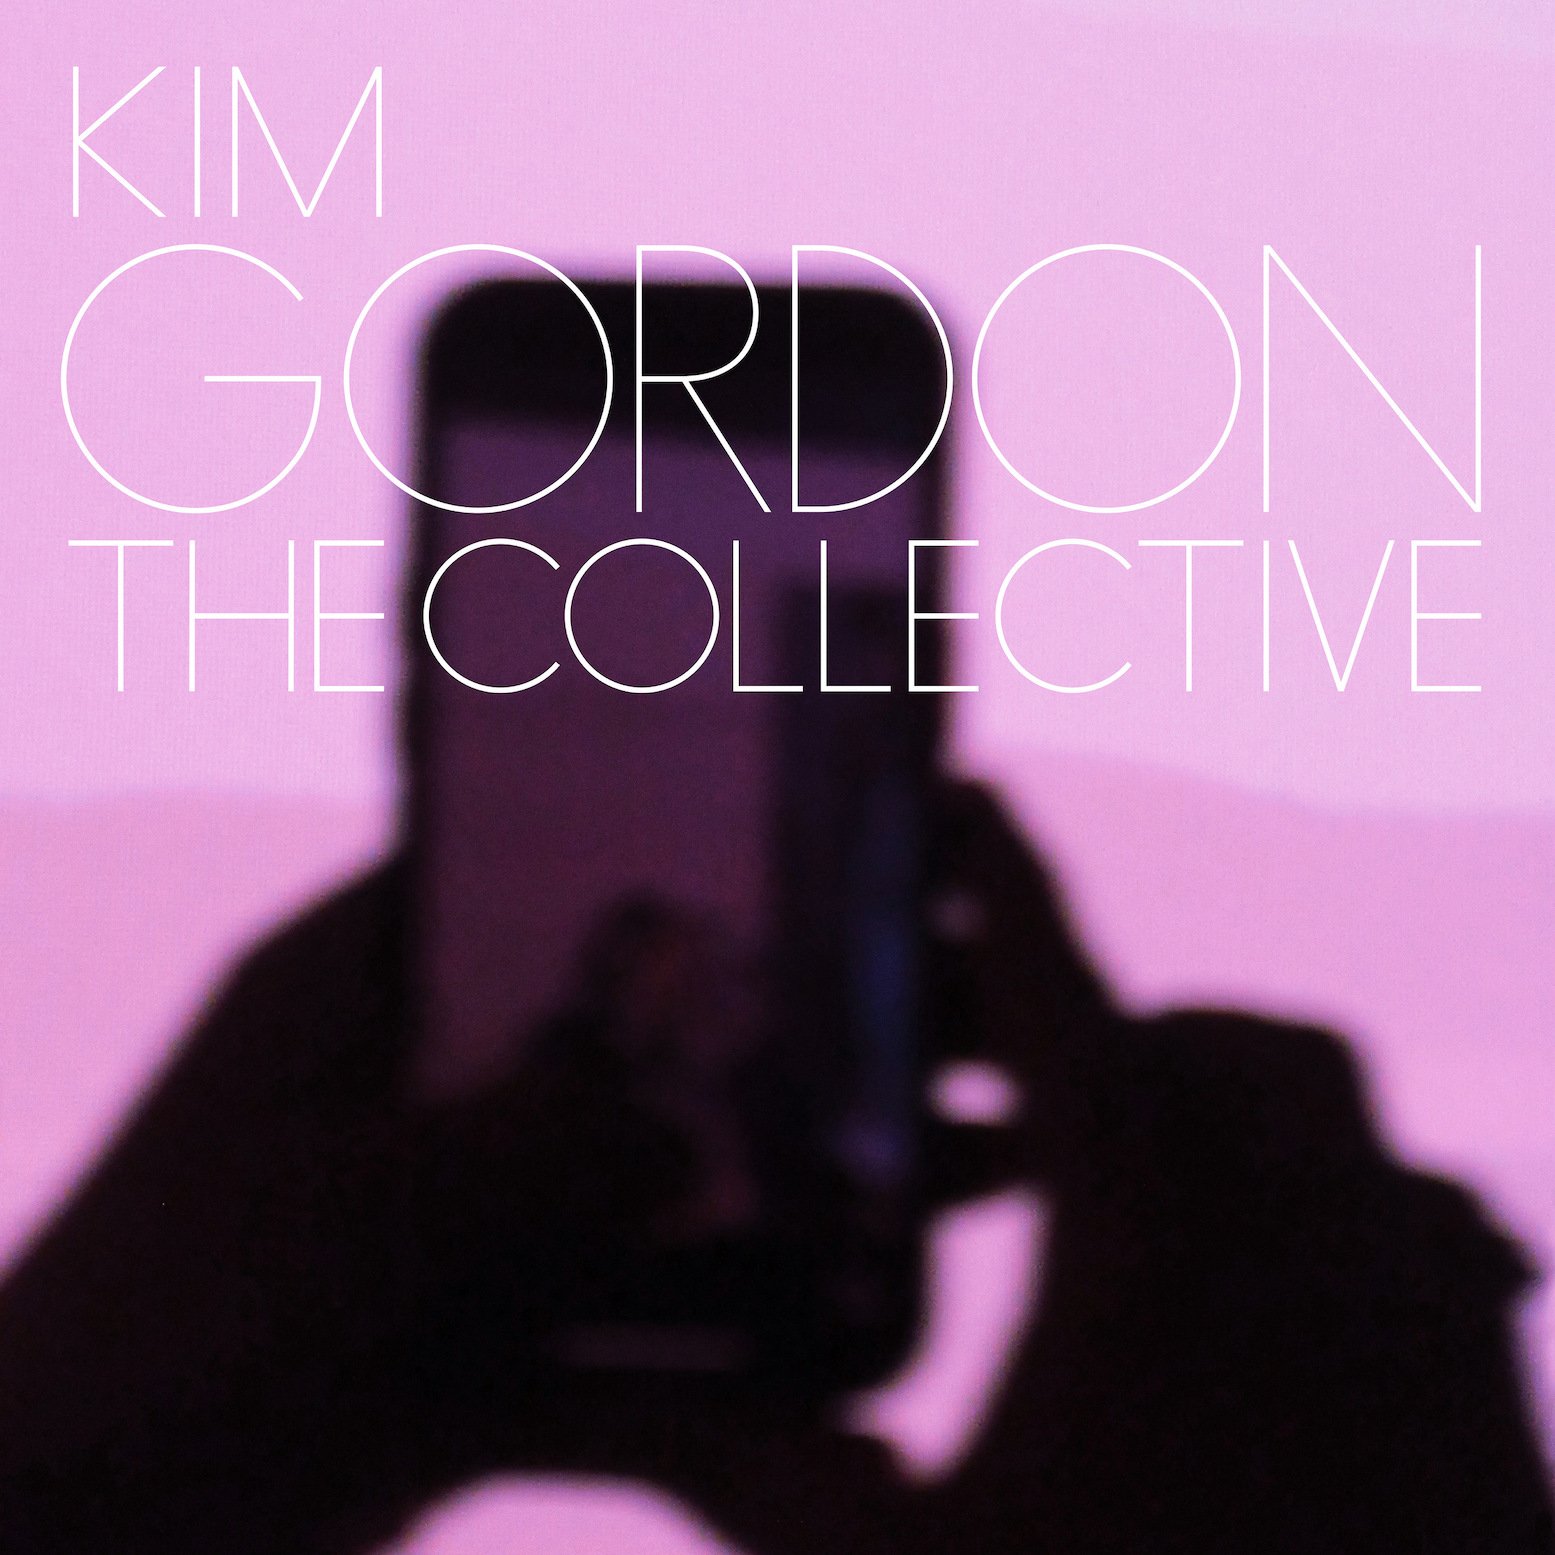   Kim Gordon -  The Collective  [Matador, 2024]  